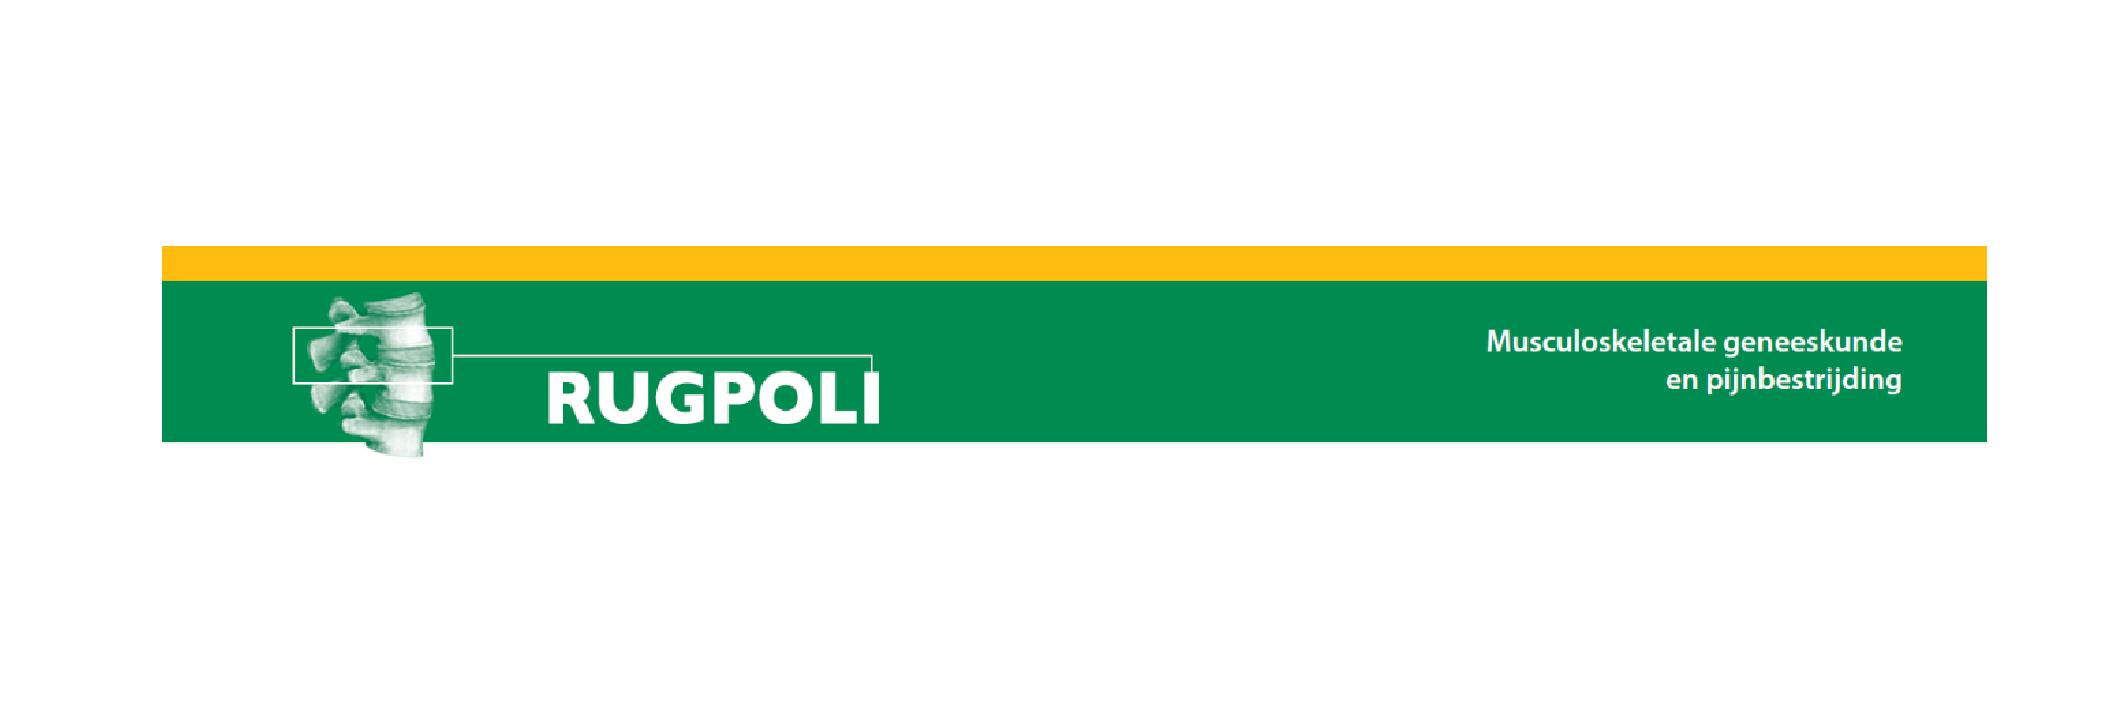 Logo rugpoli